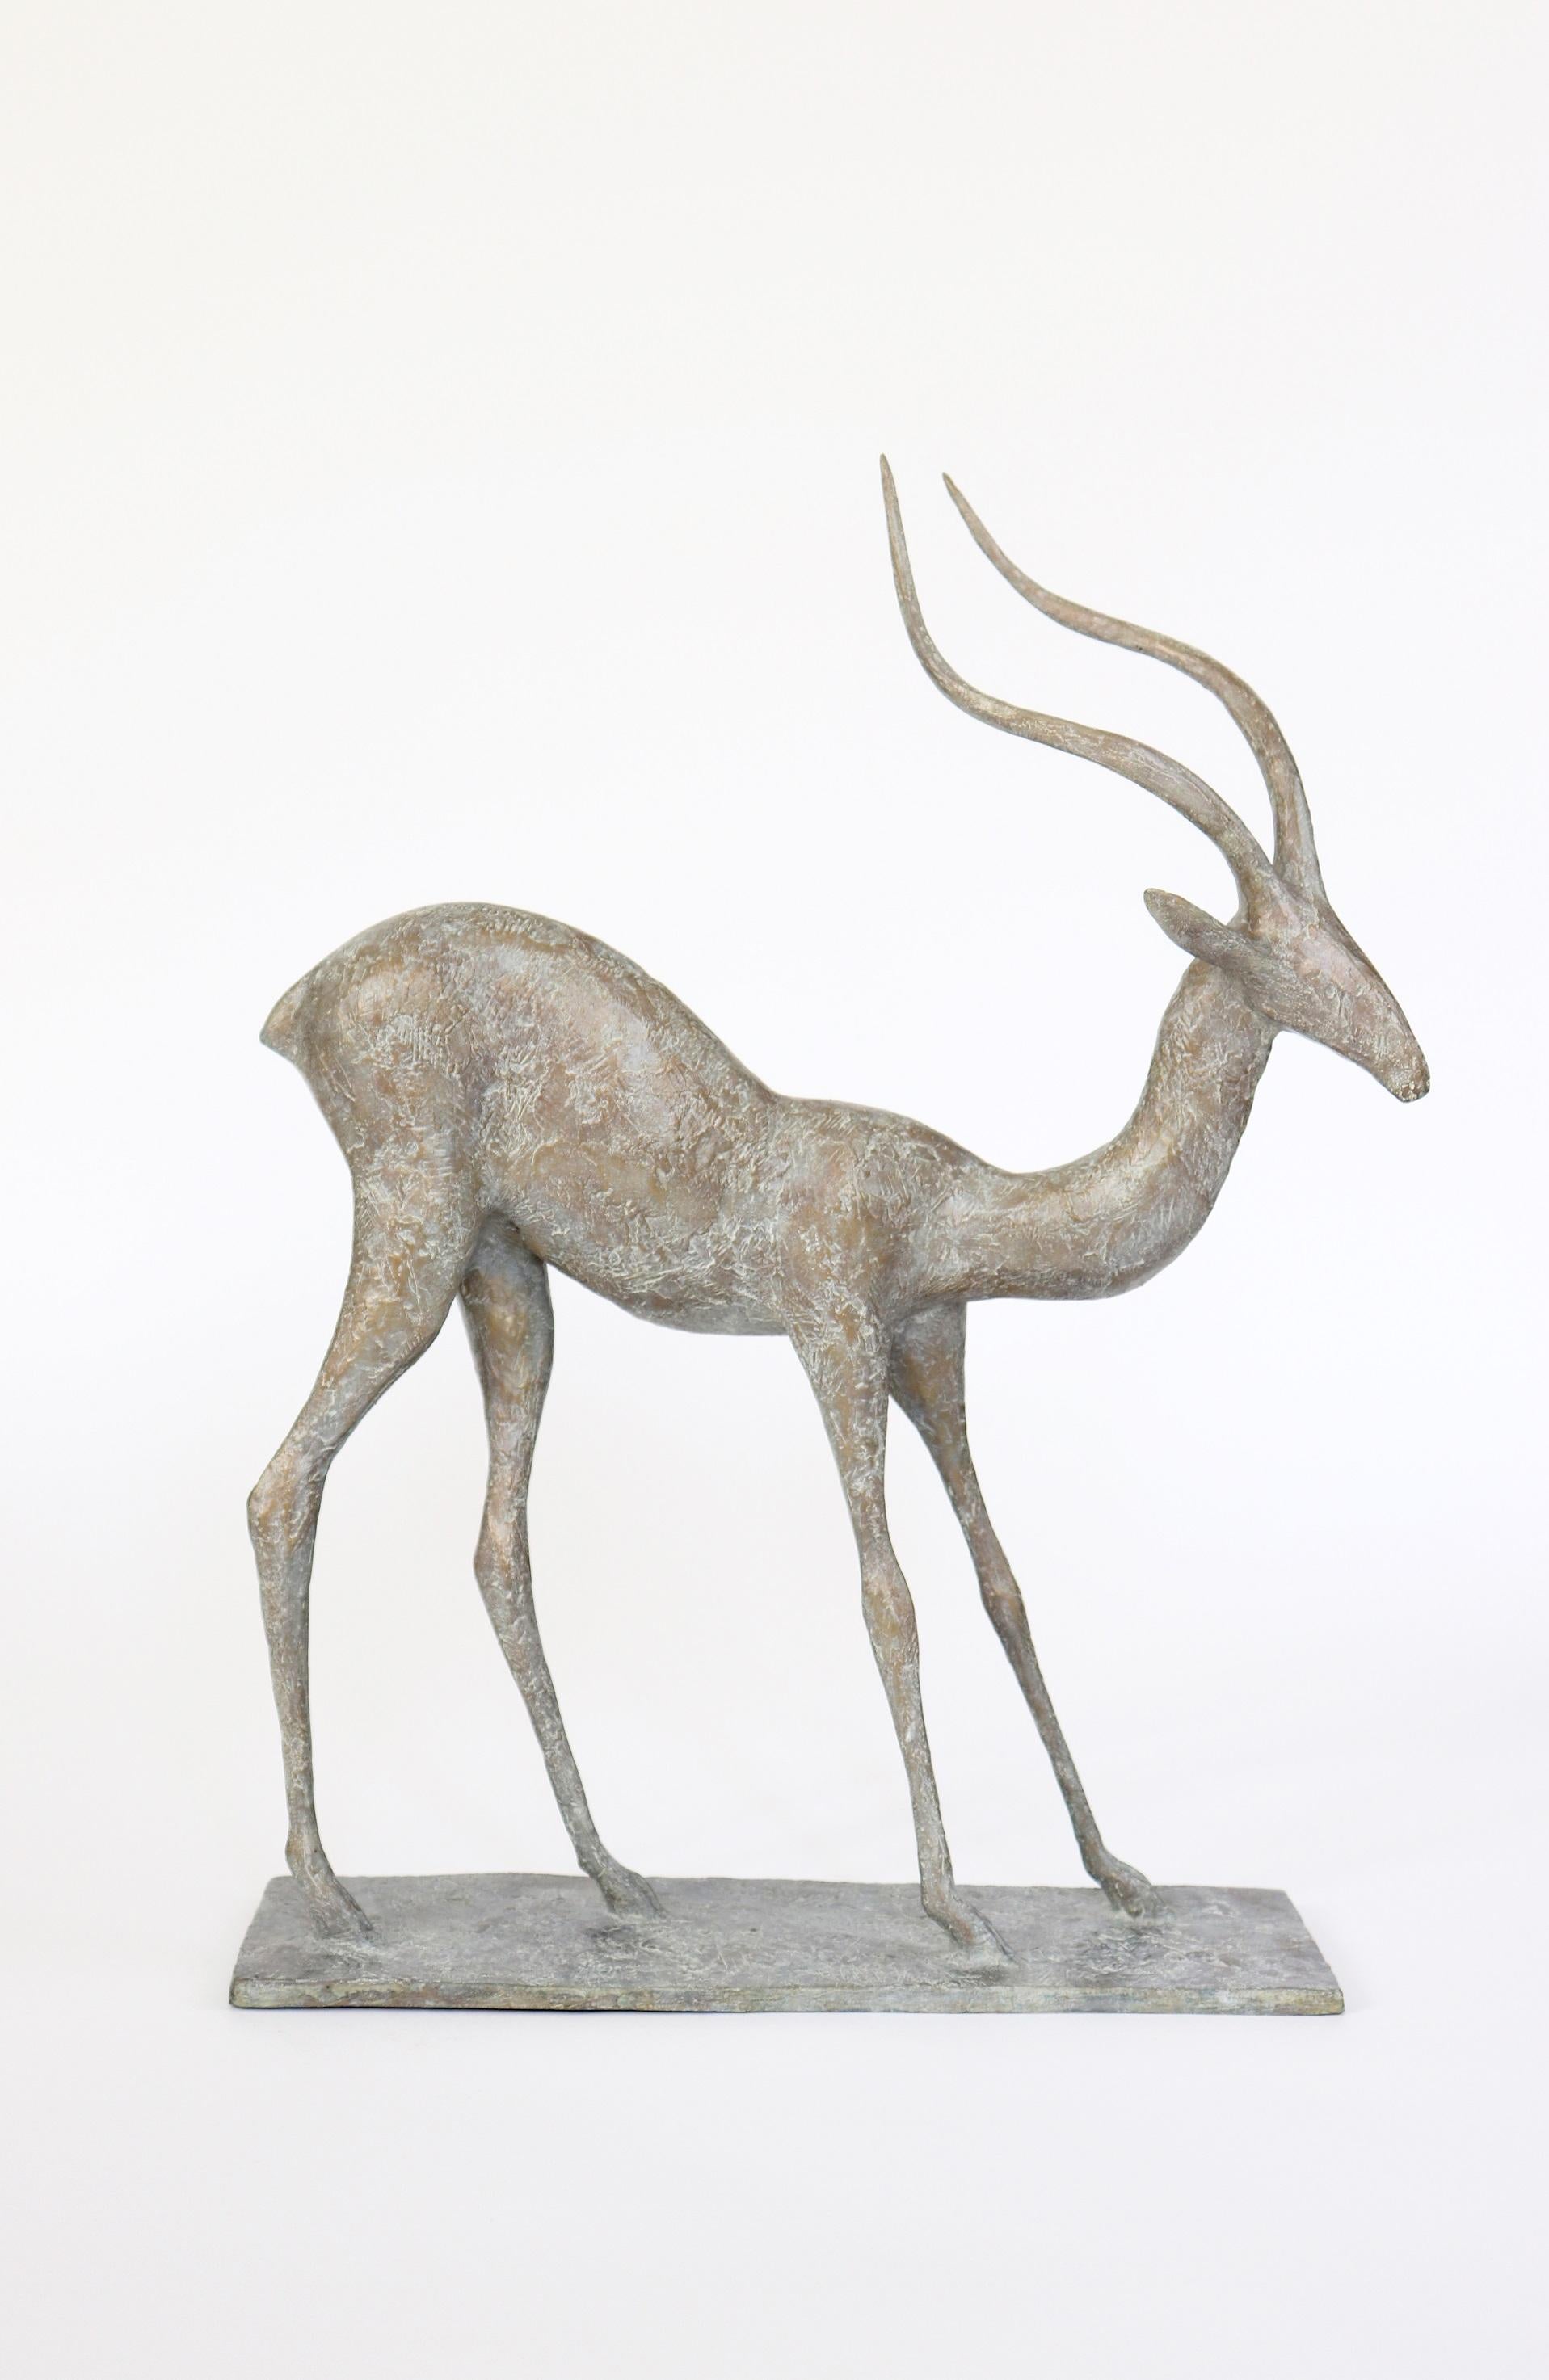 Gazelle III est une sculpture en bronze de l'artiste contemporain français Pierre Yermia, dont les dimensions sont 54 × 41 × 13 cm (21,3 × 16,1 × 5,1 in). 
La sculpture est signée et numérotée, elle fait partie d'une édition limitée à 8 exemplaires